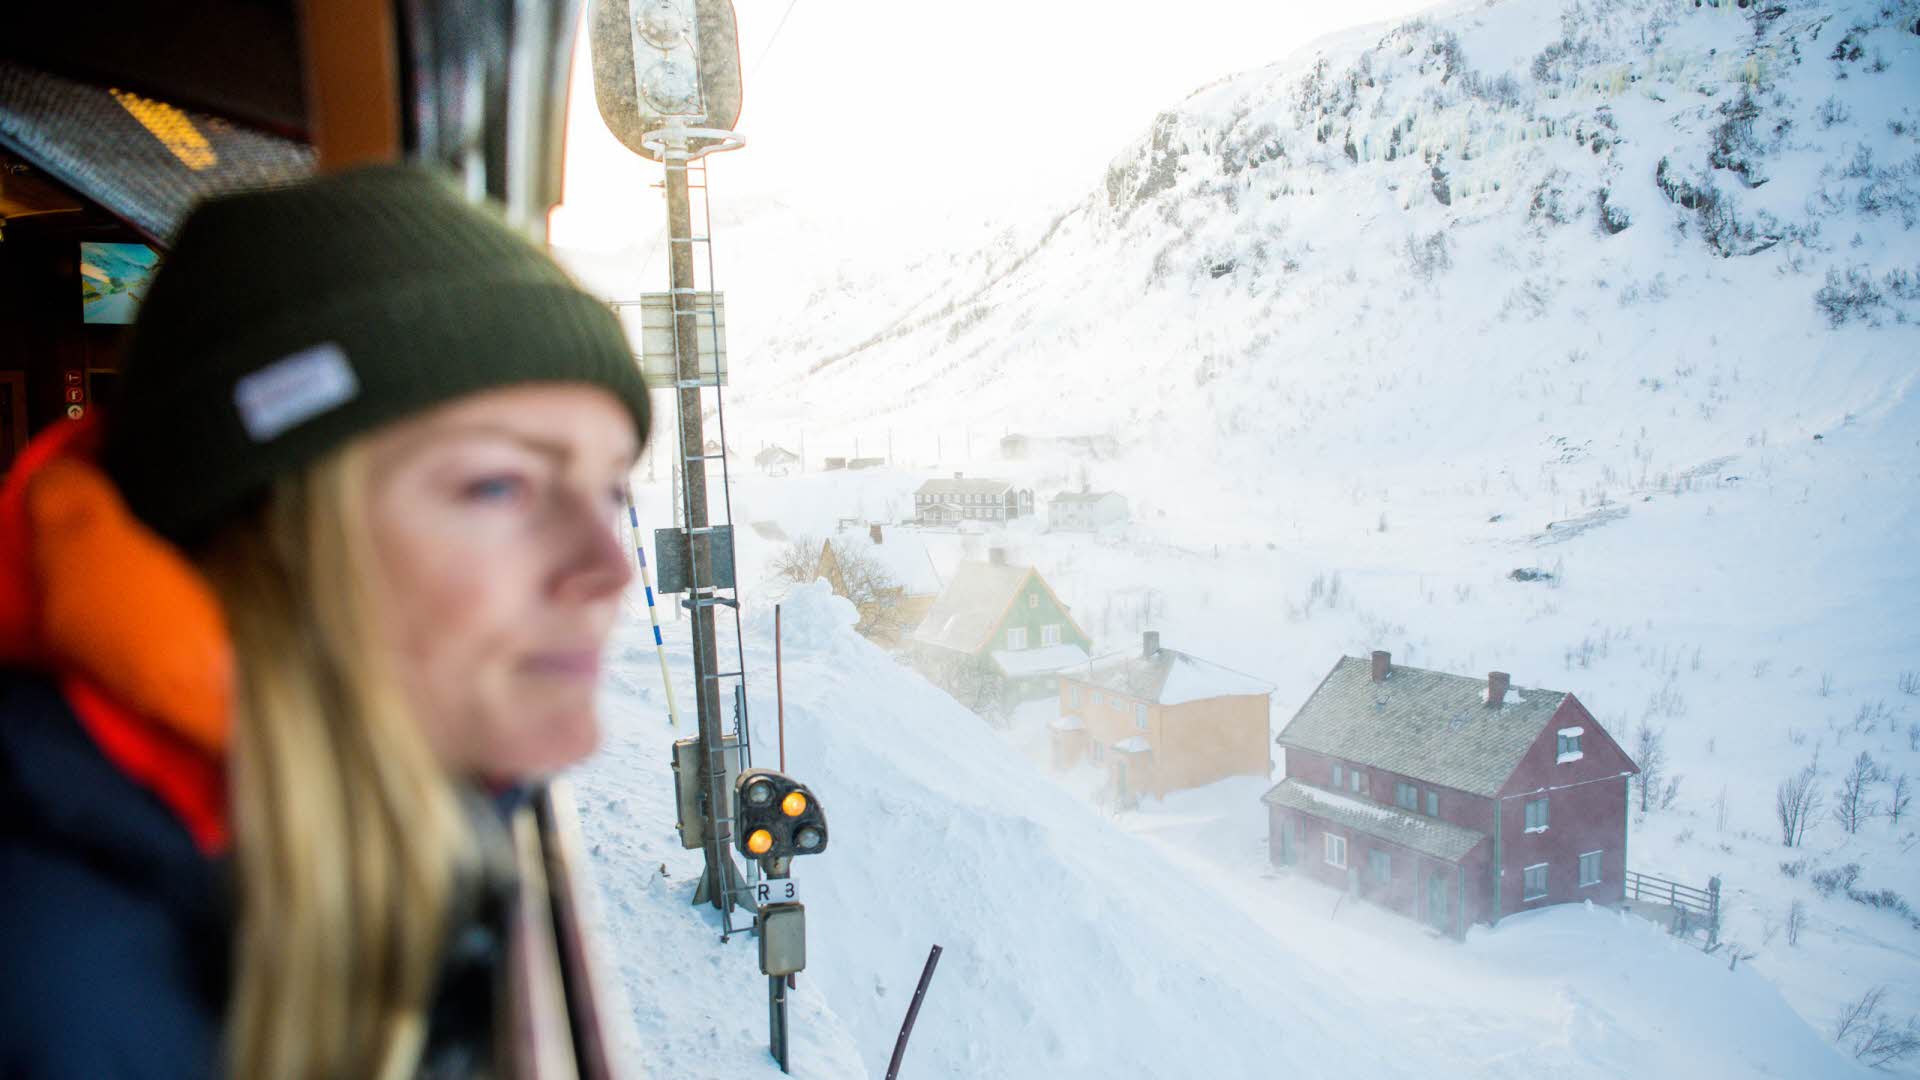 Una mujer con un sombrero mirando por la ventana del tren de Flåm, cerca de unas casas cubiertas de nieve.